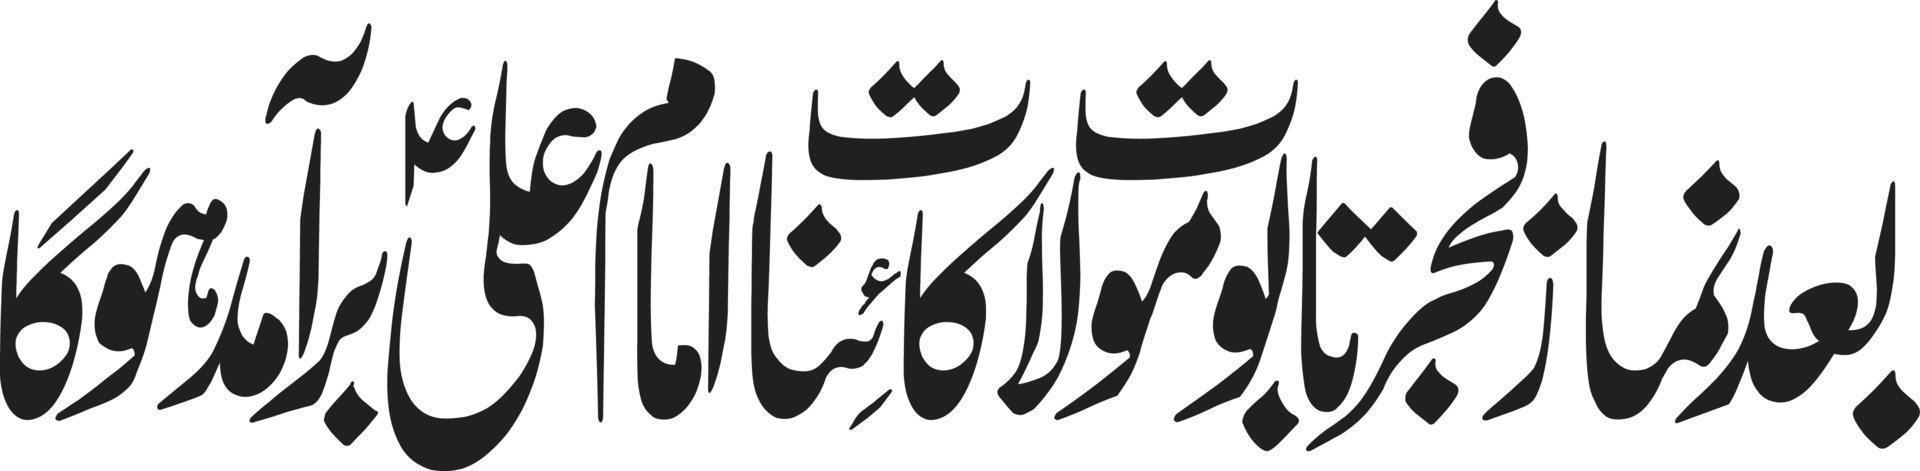 baad namaz fajer tabut mola ali vetor livre de caligrafia urdu islâmica